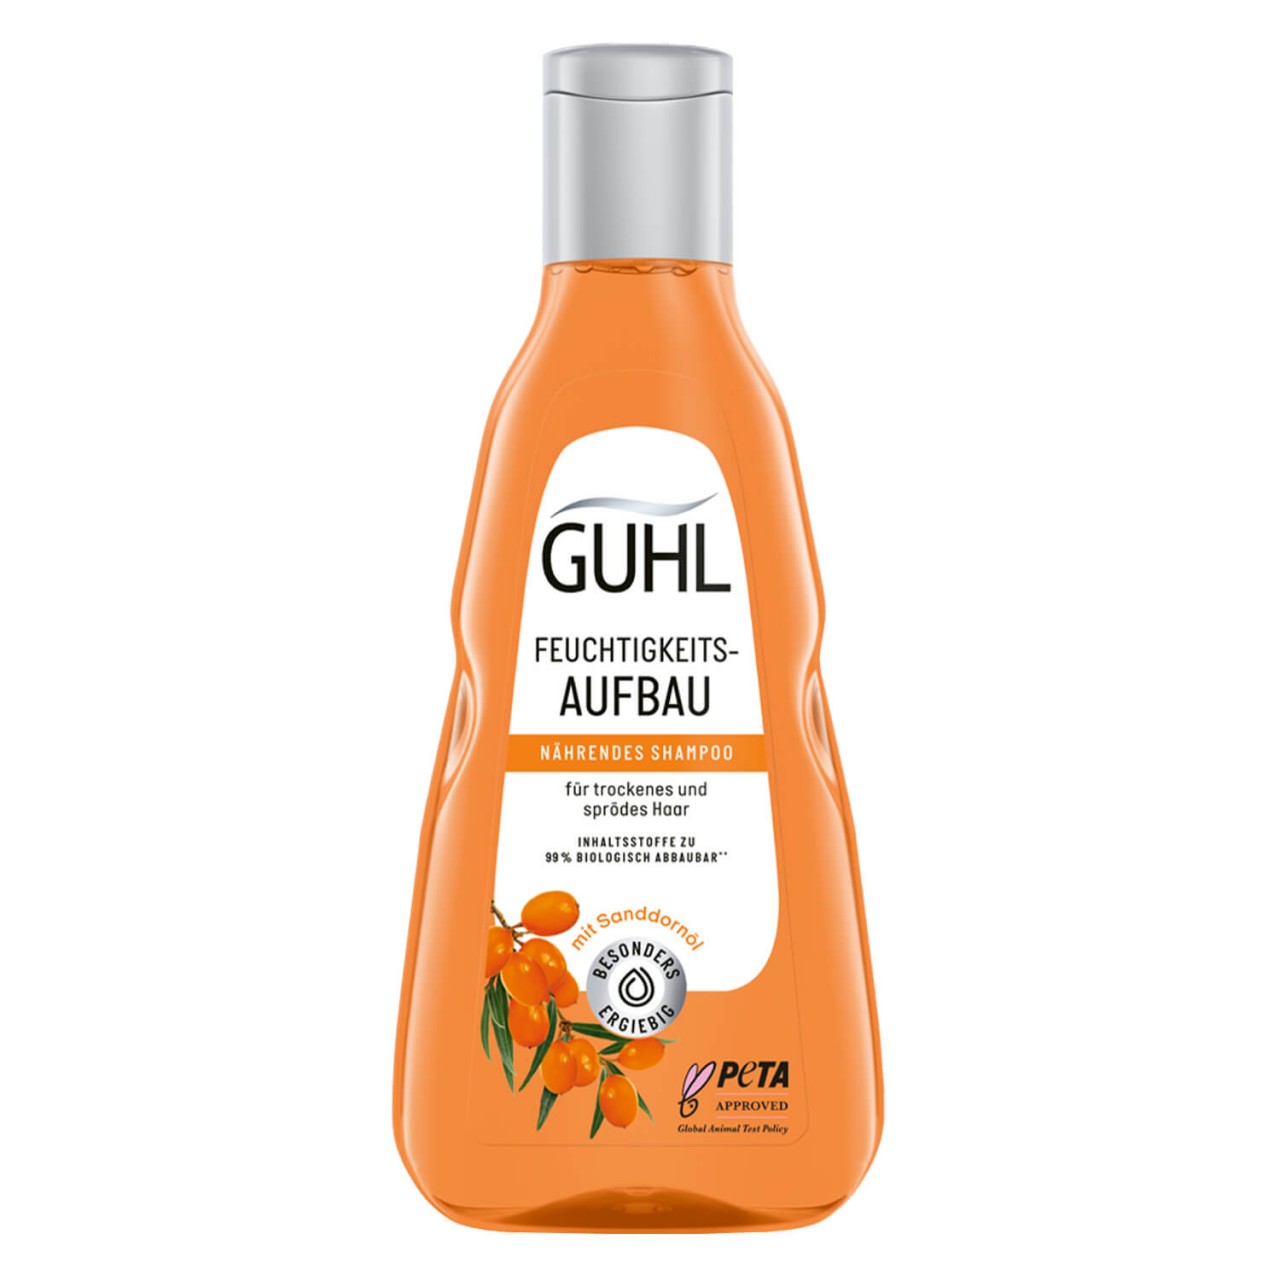 GUHL - FEUCHTIGKEITSAUFBAU Nährendes Shampoo von GUHL